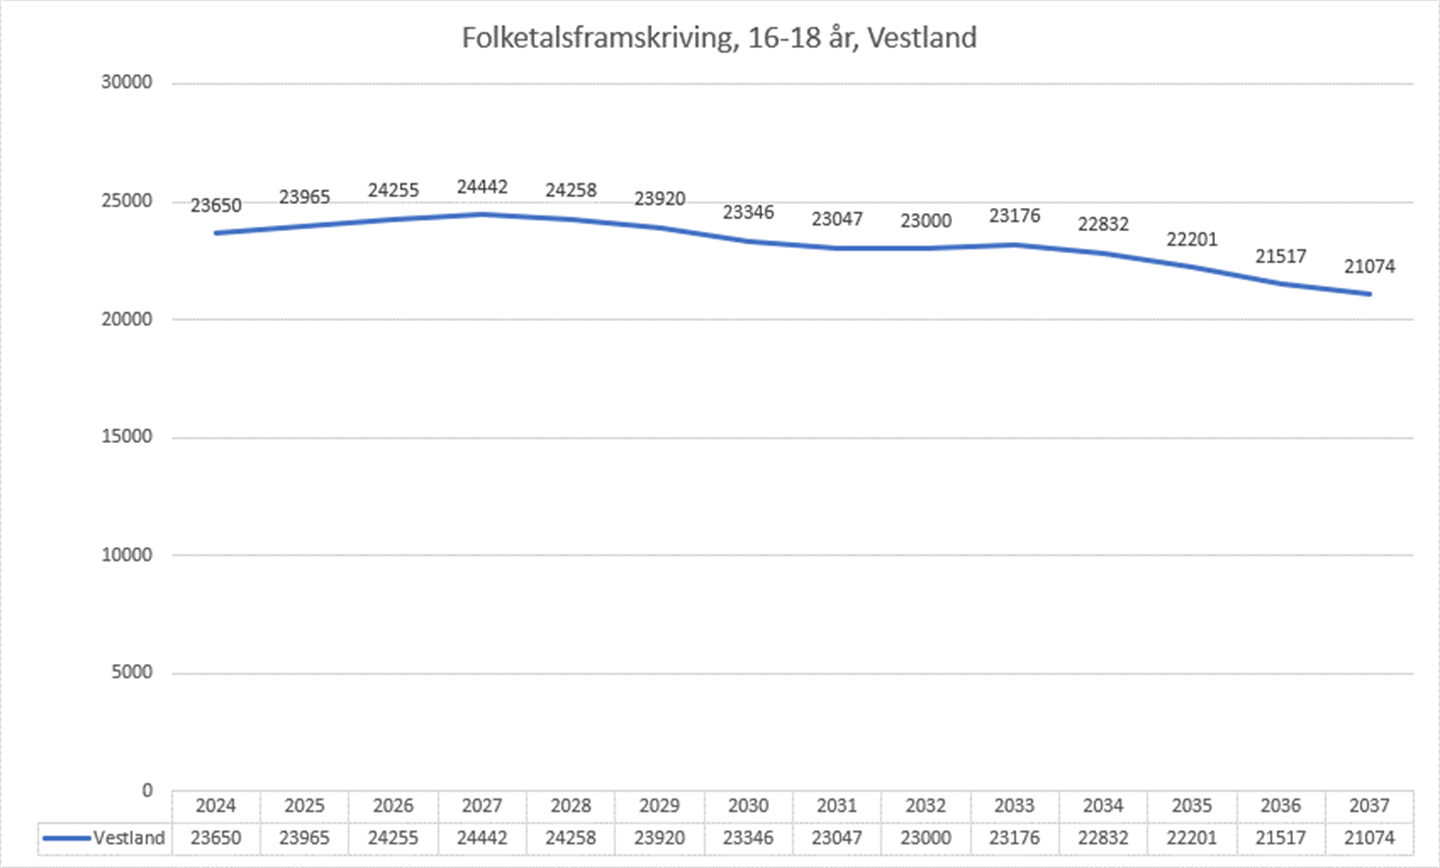 Graf som syner folketalsframskriving for 16- og 18-åringar i Vestland fram til 2037.